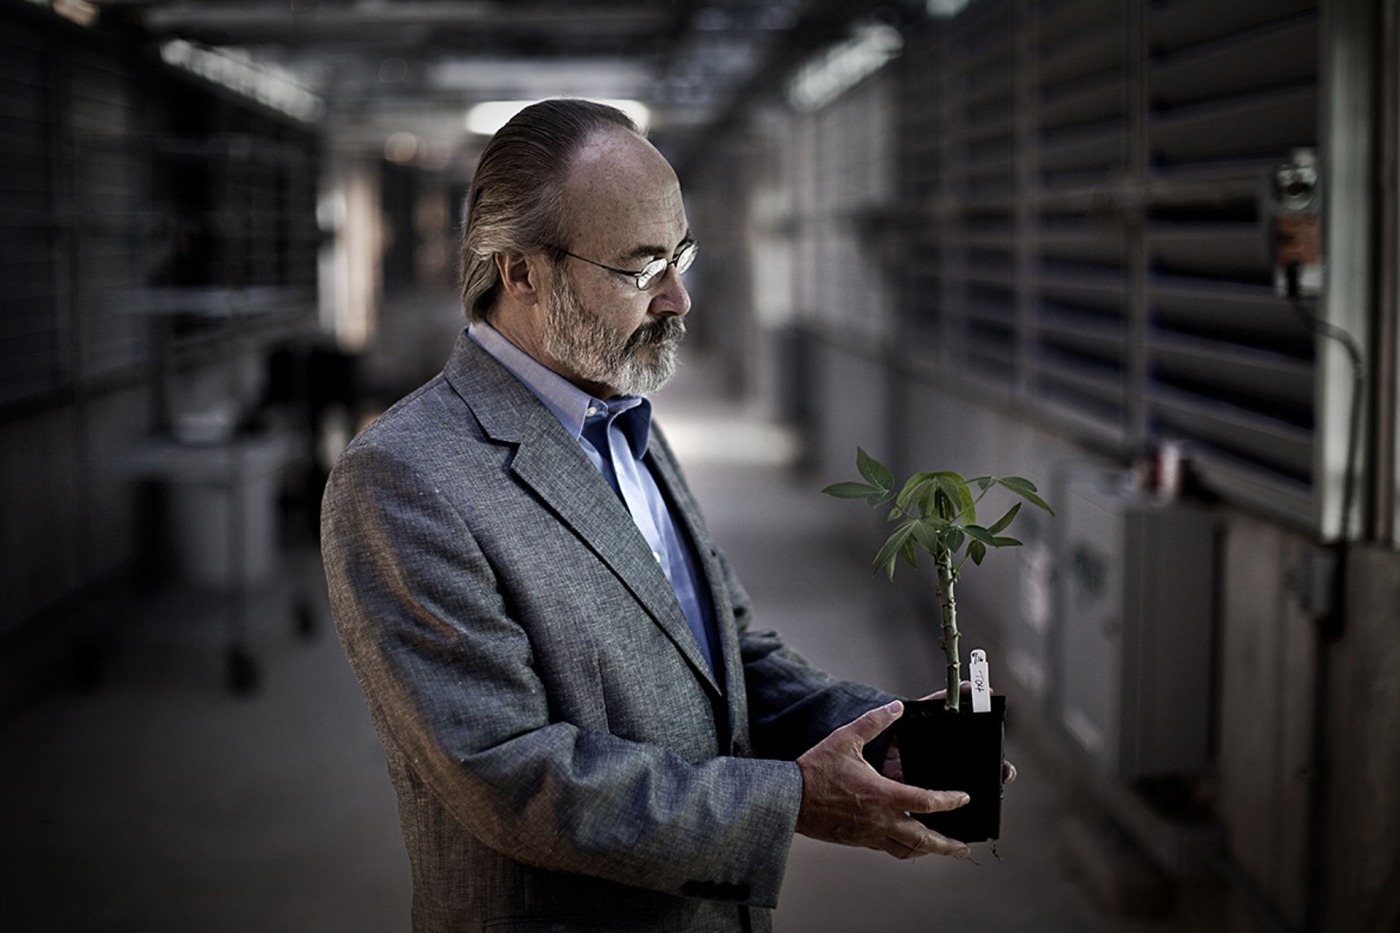 Ein Mann mit Bart, Brille und einem grauen Anzug h&auml;lt eine kleine Pflanze in einem schwarzen Topf den H&auml;nden.